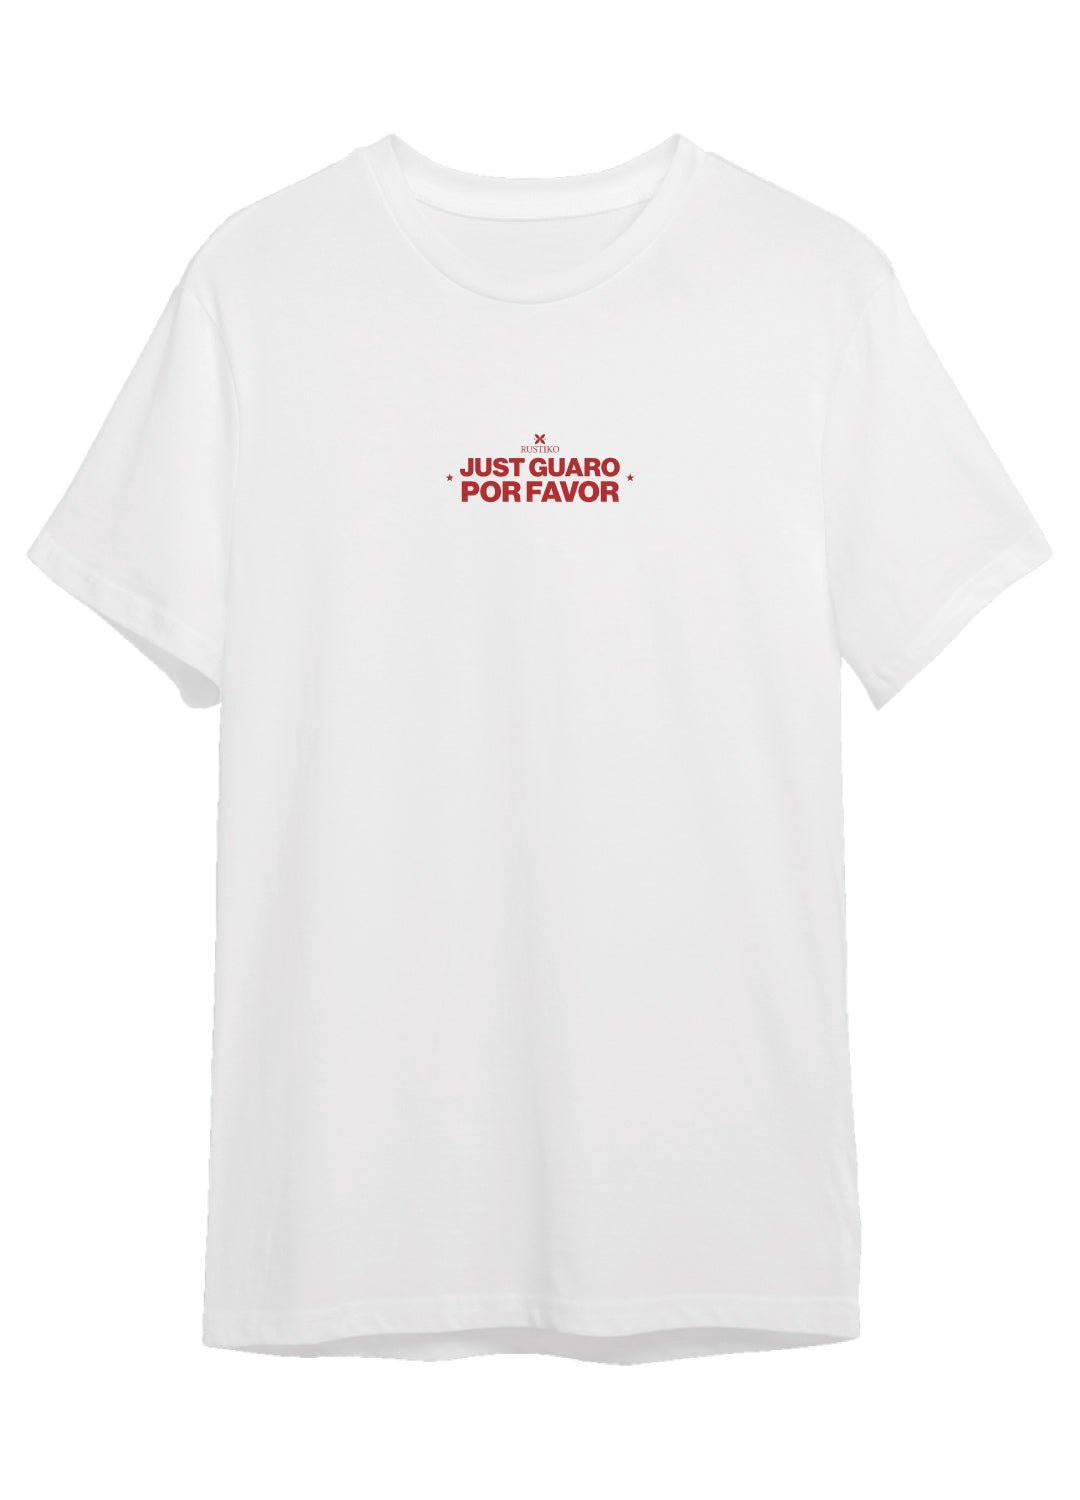 Solo buenas vibras y dos guaros por favor | Camiseta unisex color blanco - Rustiko